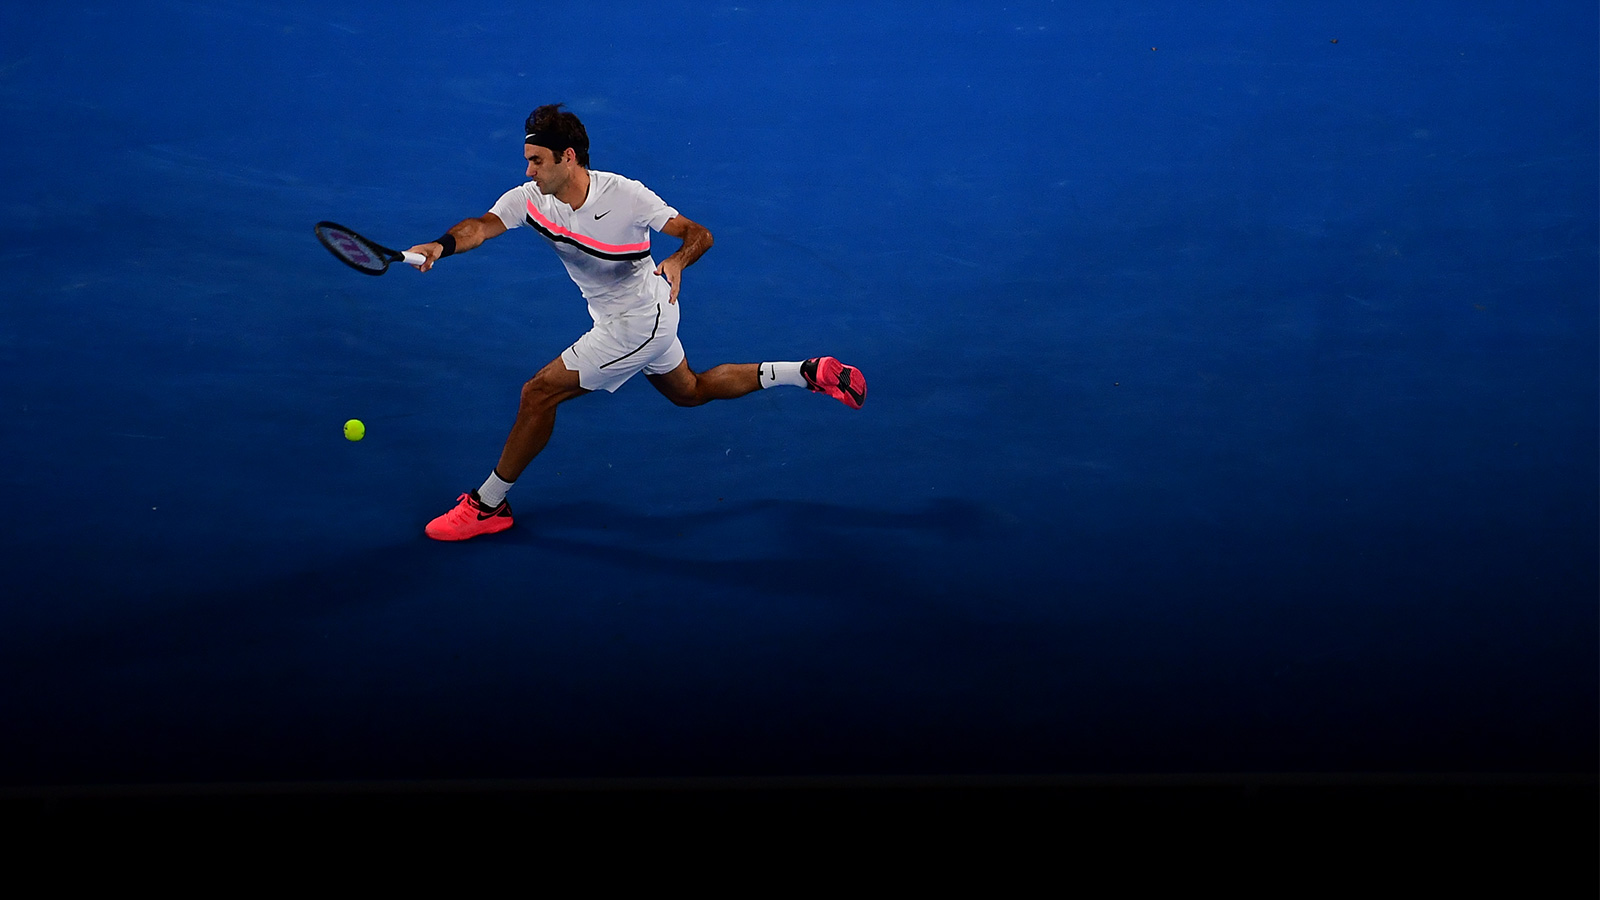 Roger Federer 2018 Australian Open - Federer Moves Past Struff into Australian Open Third Round